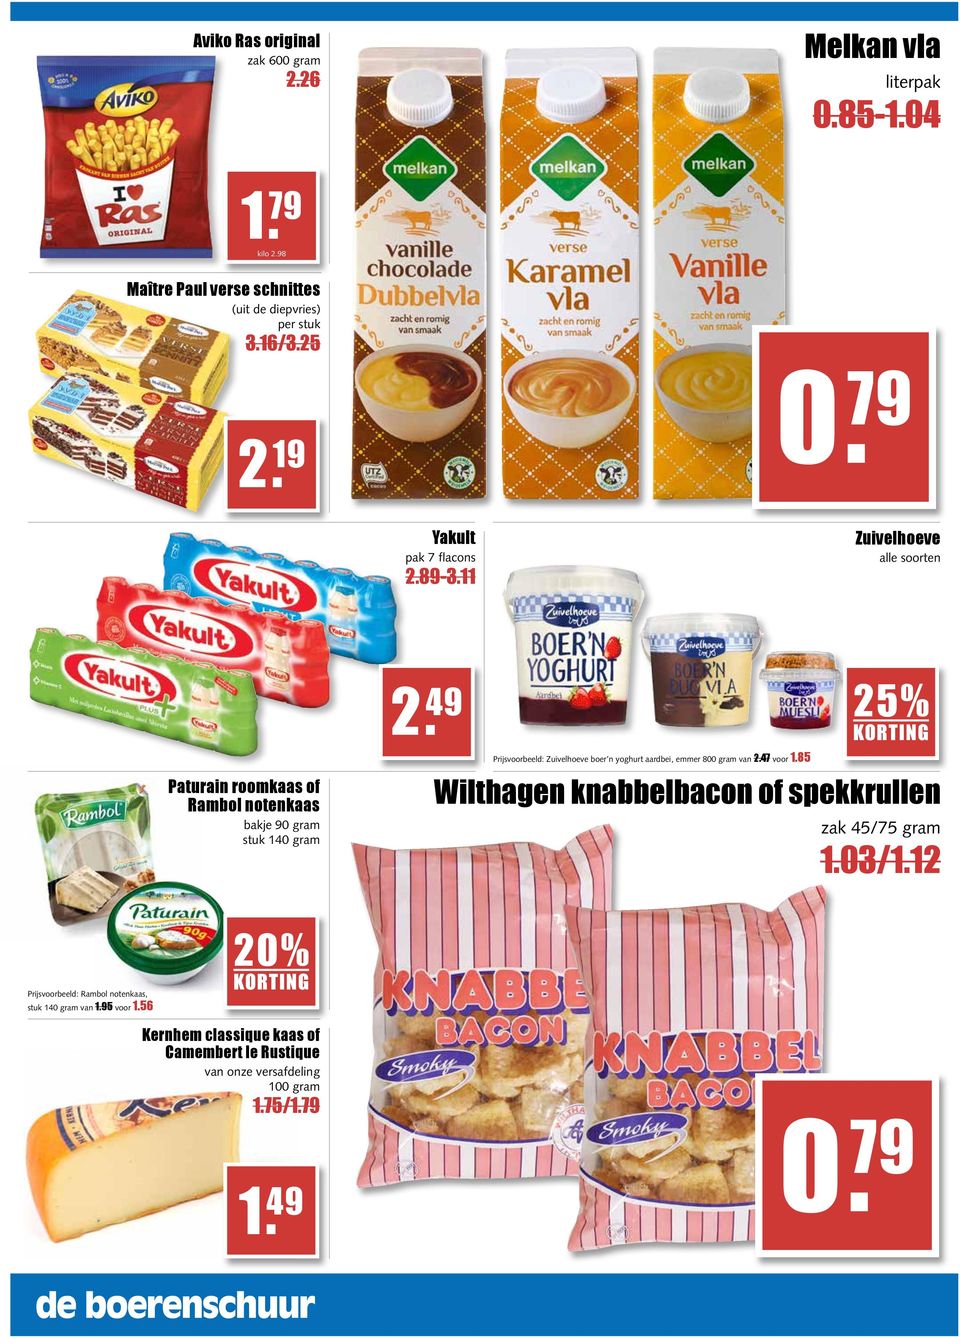 49 25% Prijsvoorbeeld: Zuivelhoeve boer n yoghurt aardbei, emmer 800 gram van 2.47 voor 1.85 Wilthagen knabbelbacon of spekkrullen zak 45/75 gram 1.03/1.